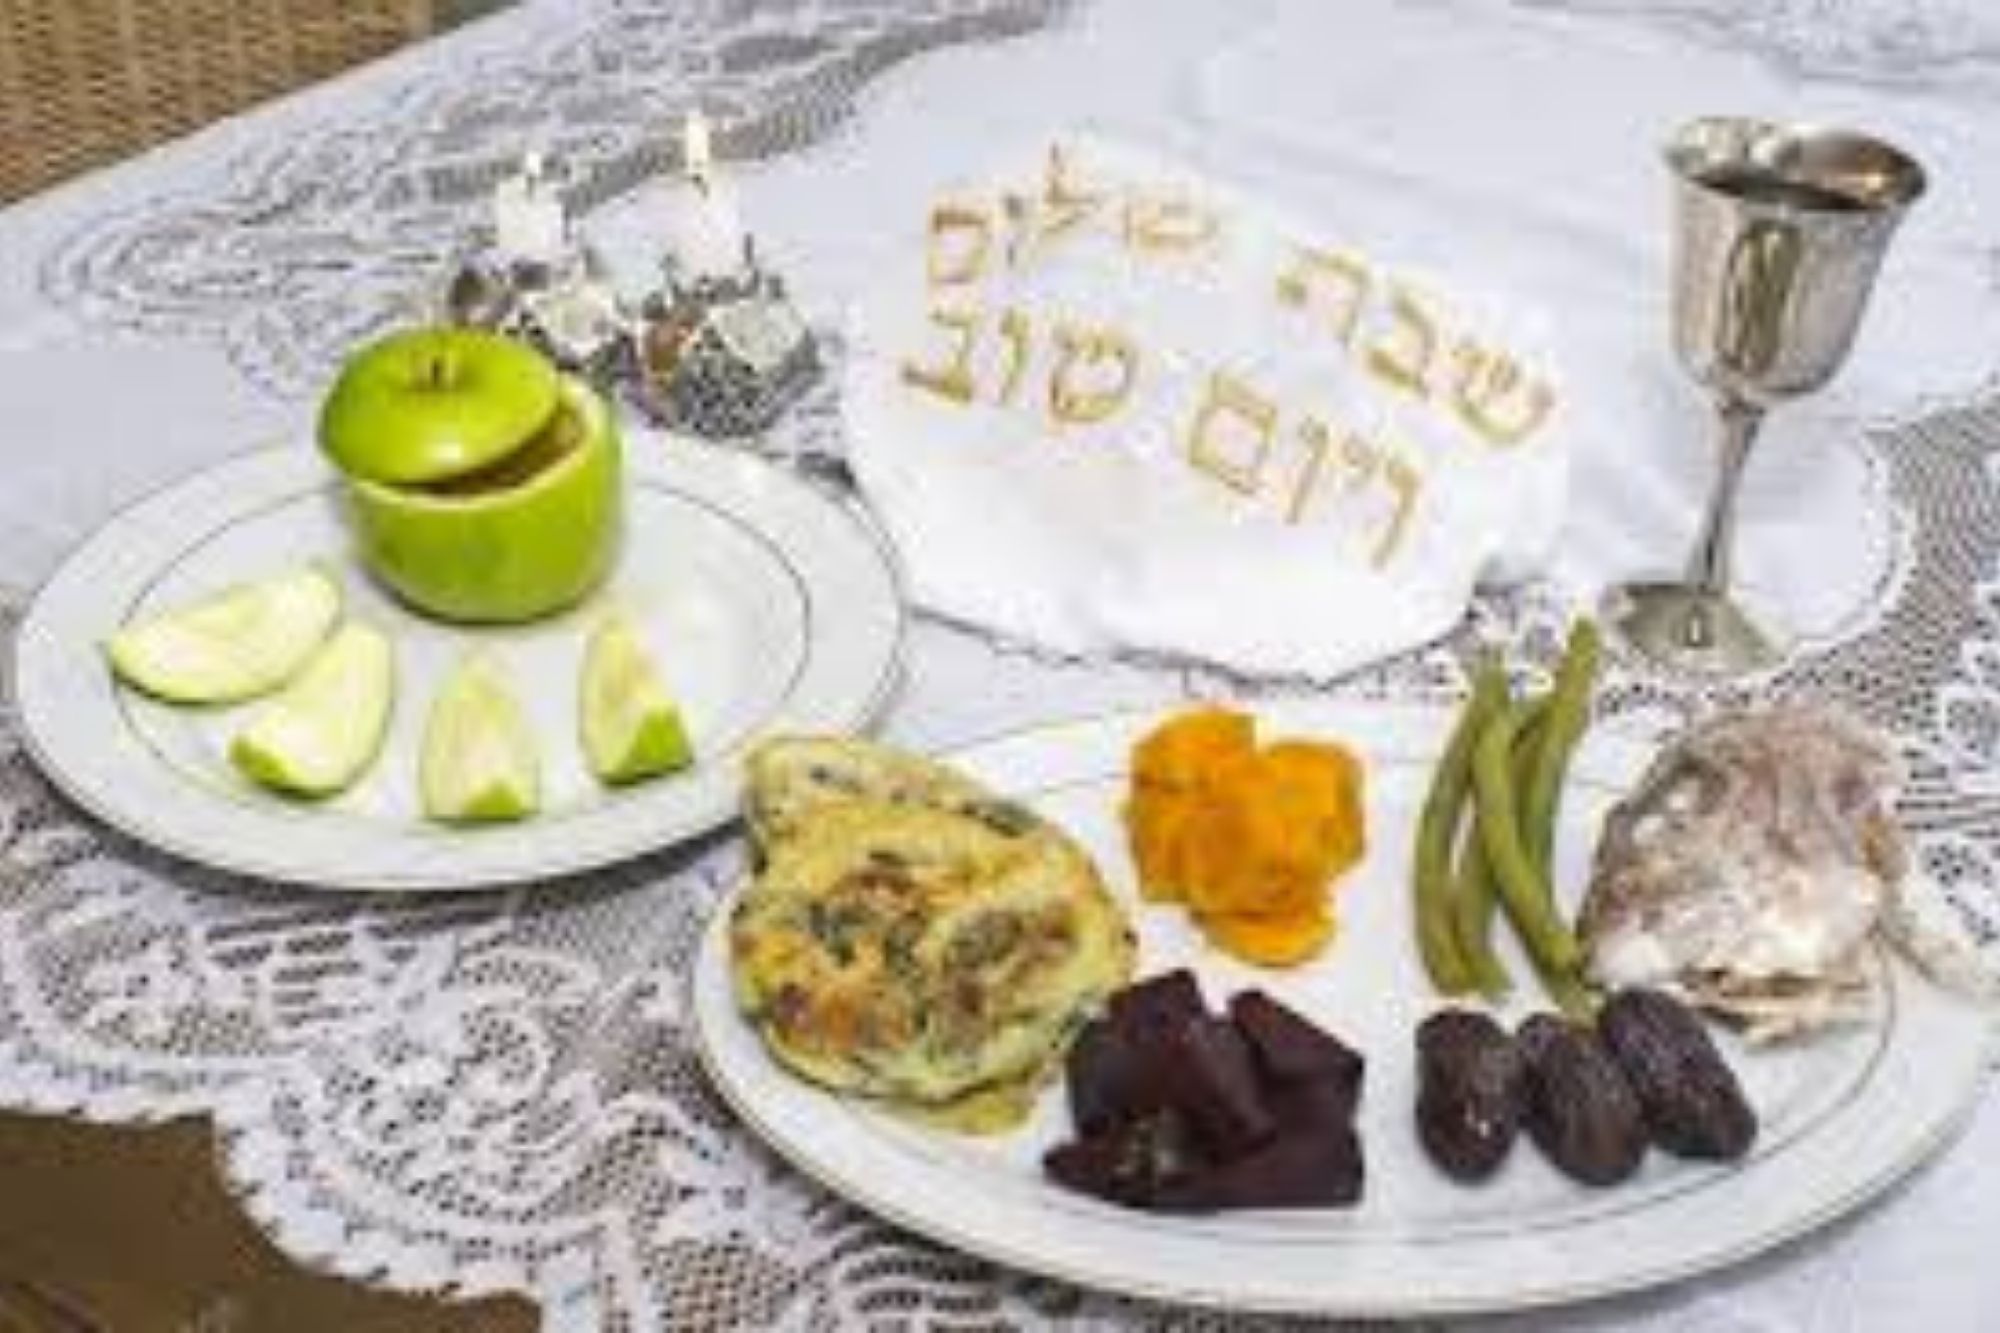 Manzana con miel, dátiles, granada, puerros: alimentos de la corriente sefardi que se colocan en la mesa de Rosh Hashaná